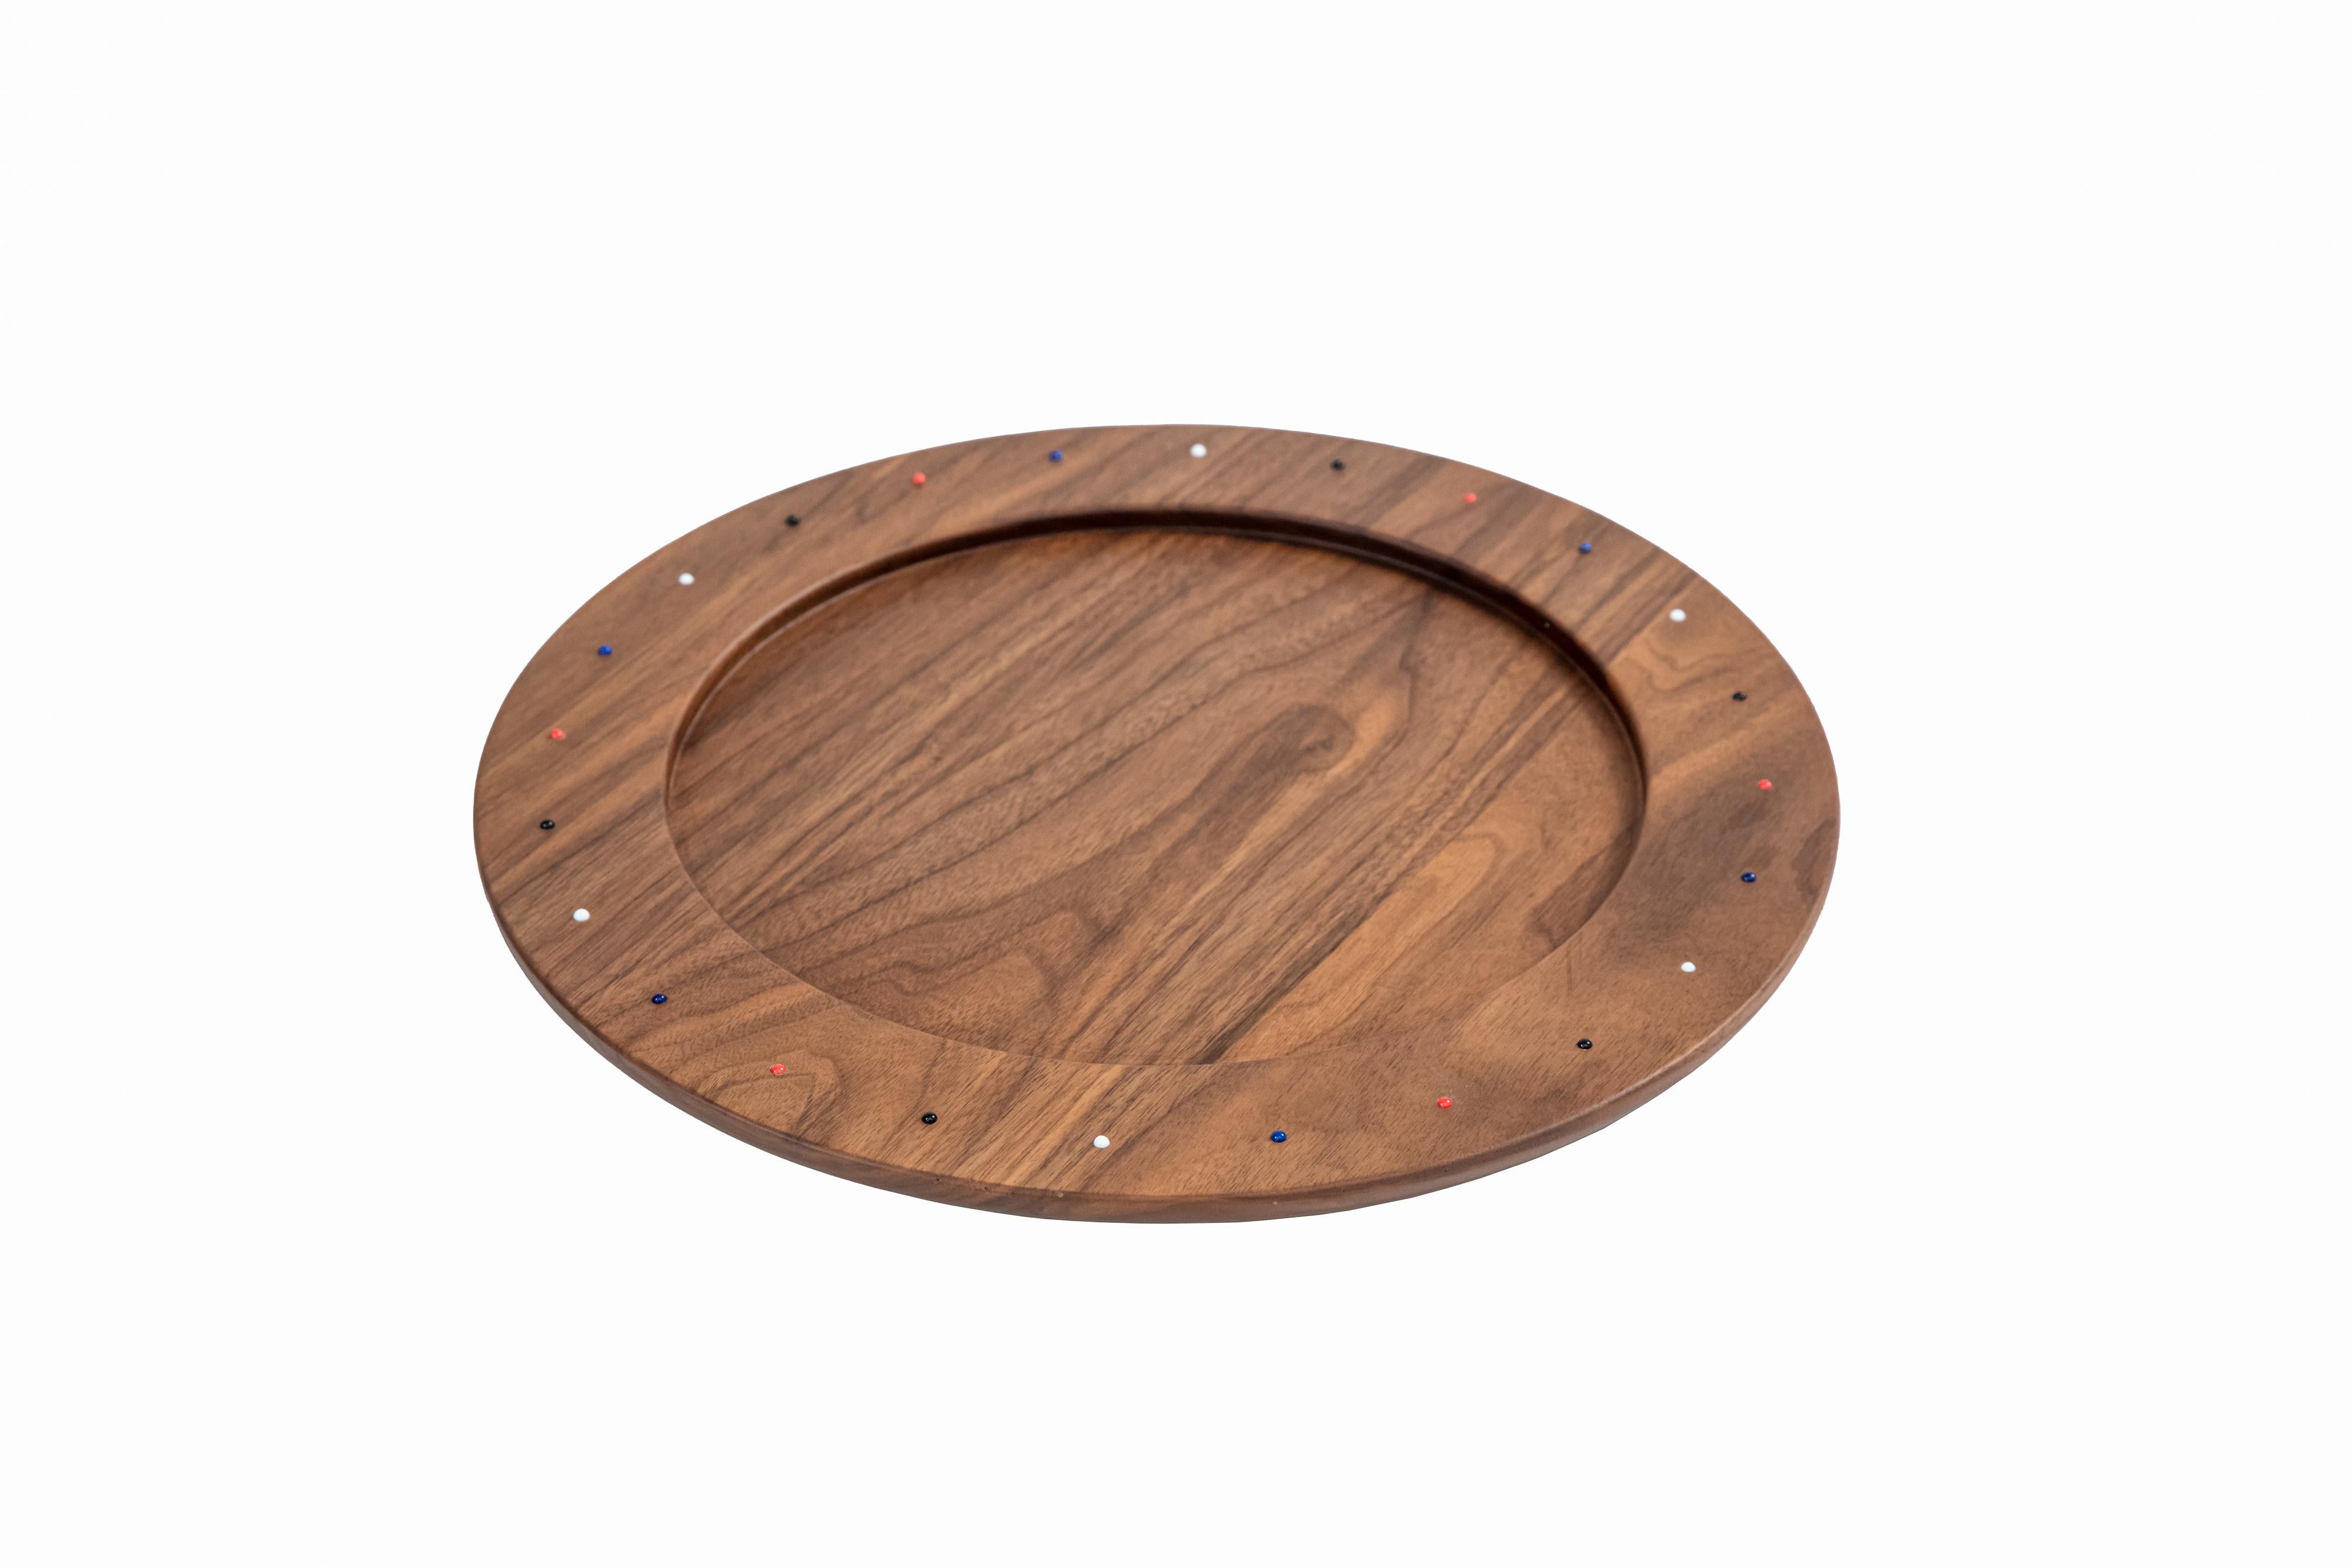 Cette pièce de la collection SoShiro Pok est un plat de service ou un centre de table en bois parfaitement rond, sculpté dans une seule pièce de bois de noyer massif et orné de perles de verre placées à la main. 

La collection Pok célèbre l'art du